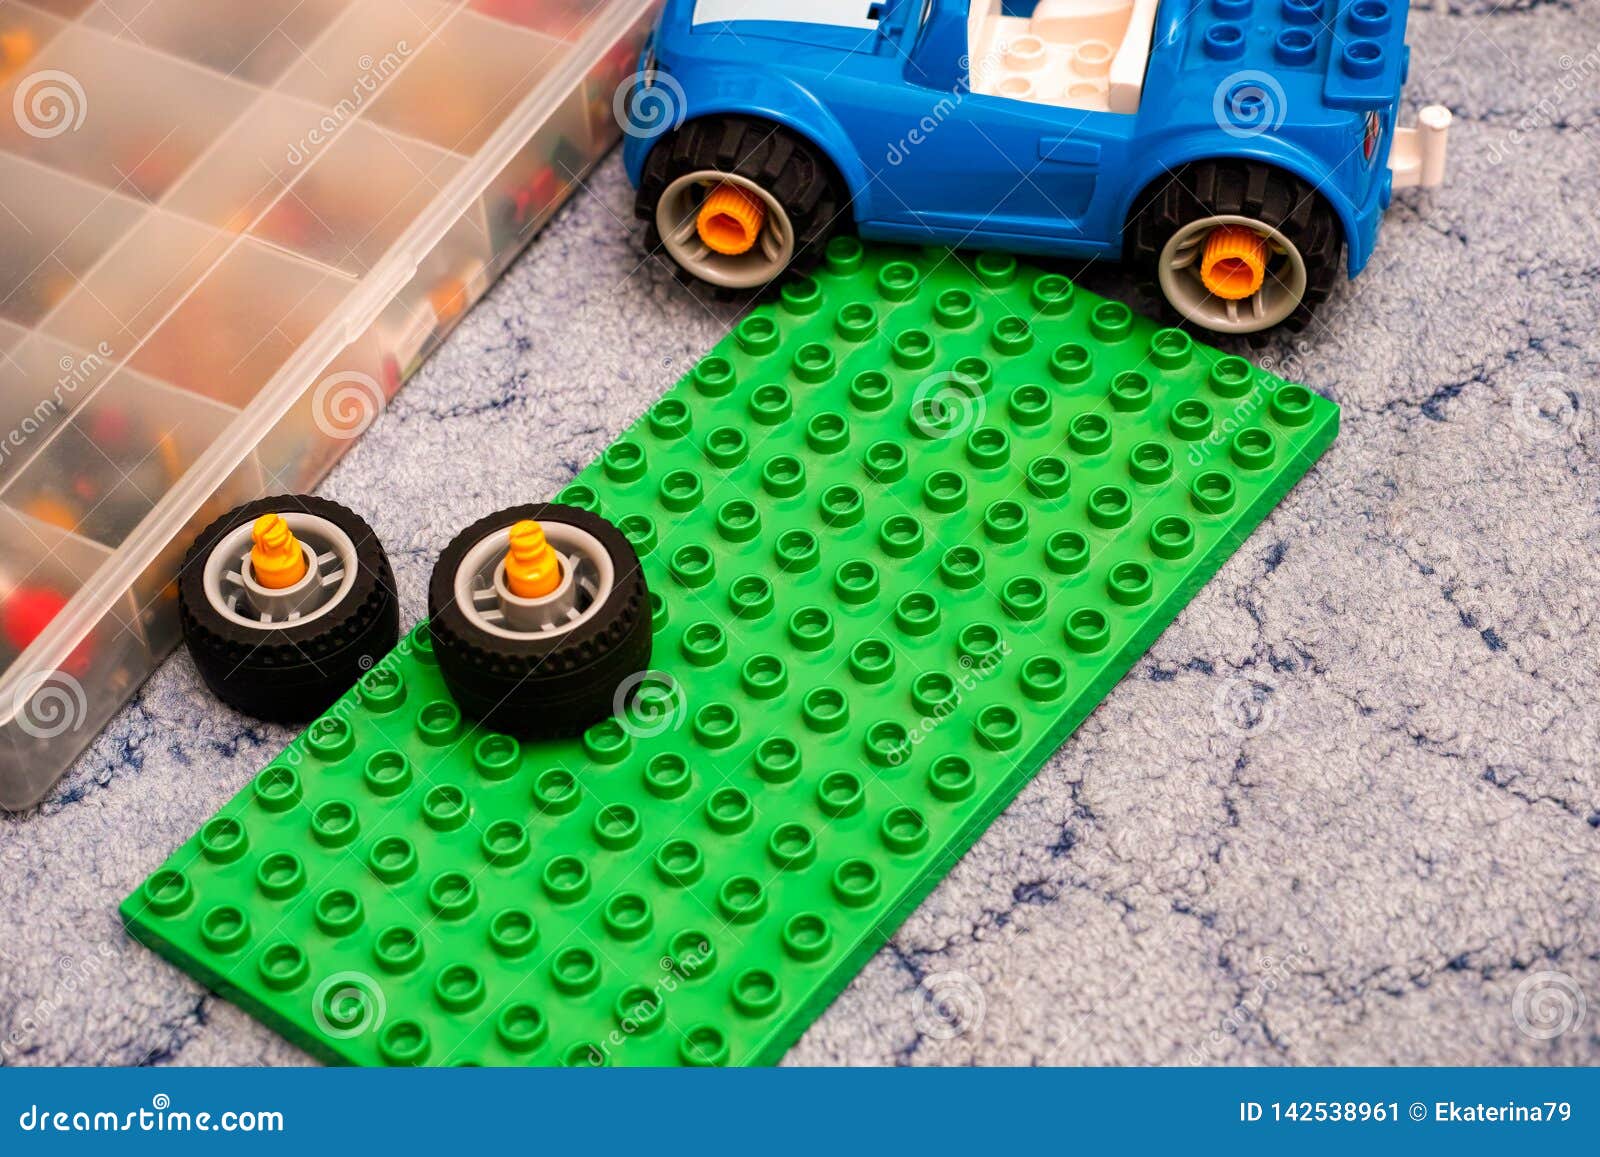 Inwoner straal mooi zo Grondplaat, De Auto, De Wielen En De Doos Van Lego Duplo De Groene Op De  Vloer Redactionele Foto - Image of niemand, blauw: 142538961